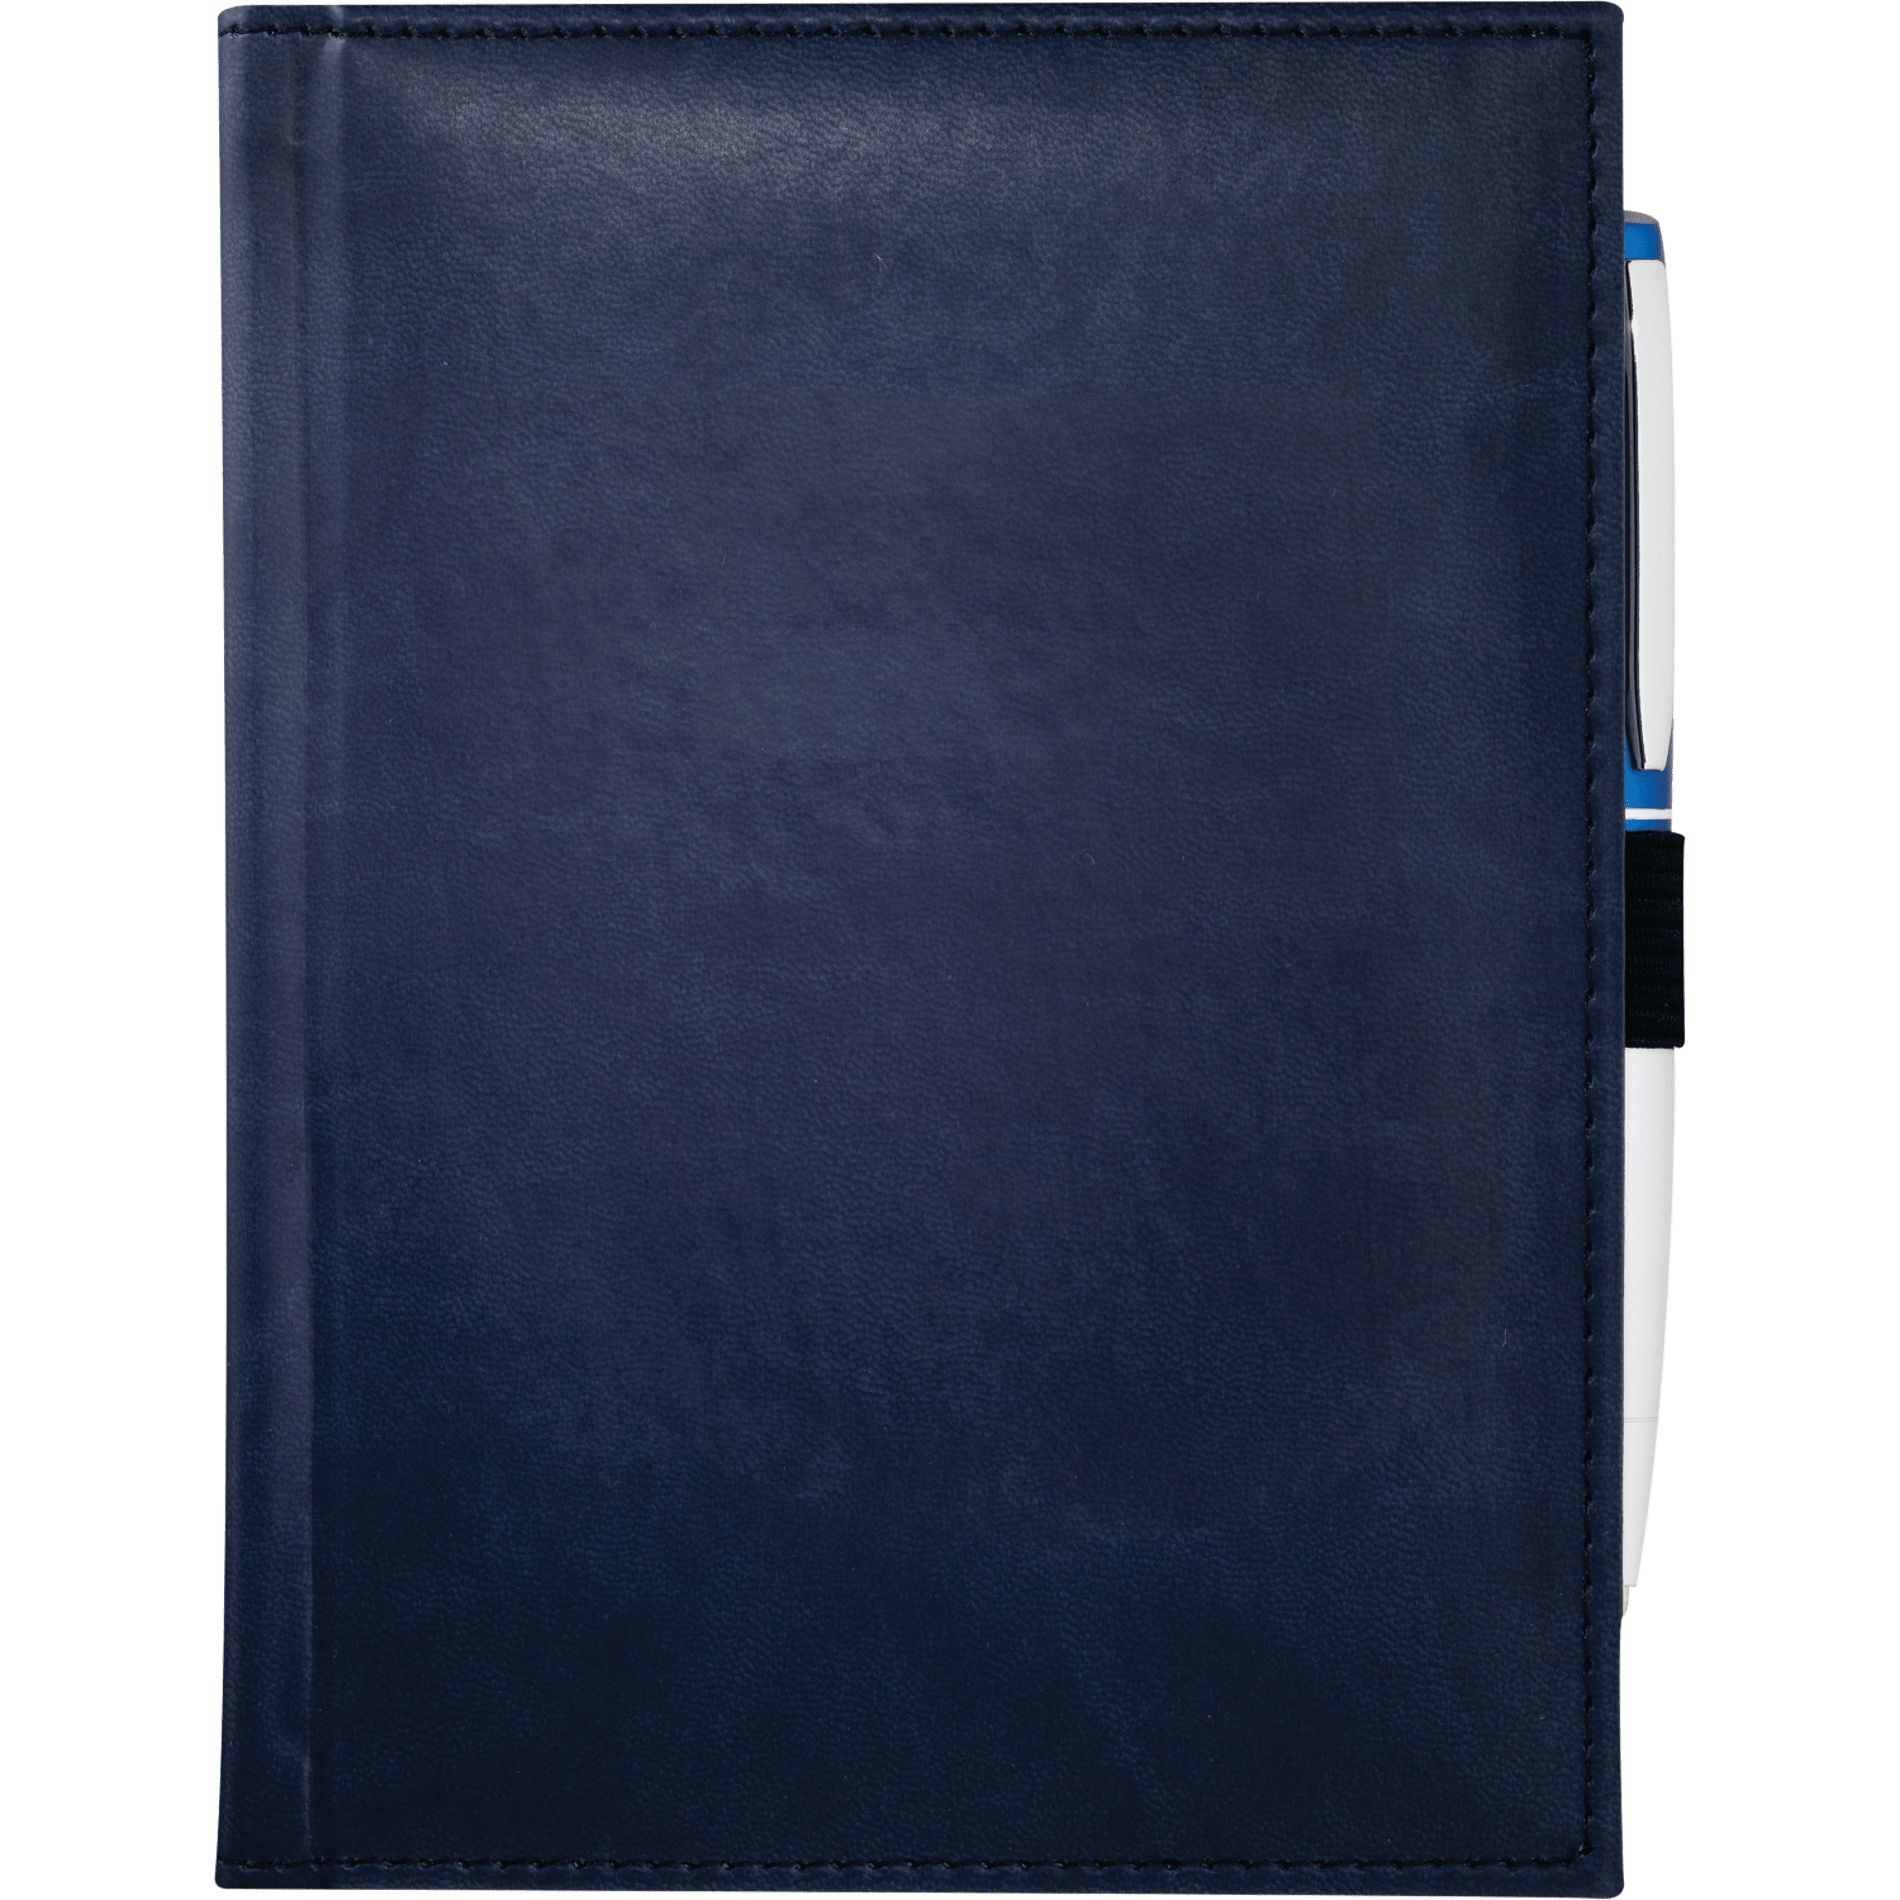 Pedova 2700-02 - 5" x 7" Bound JournalBook®